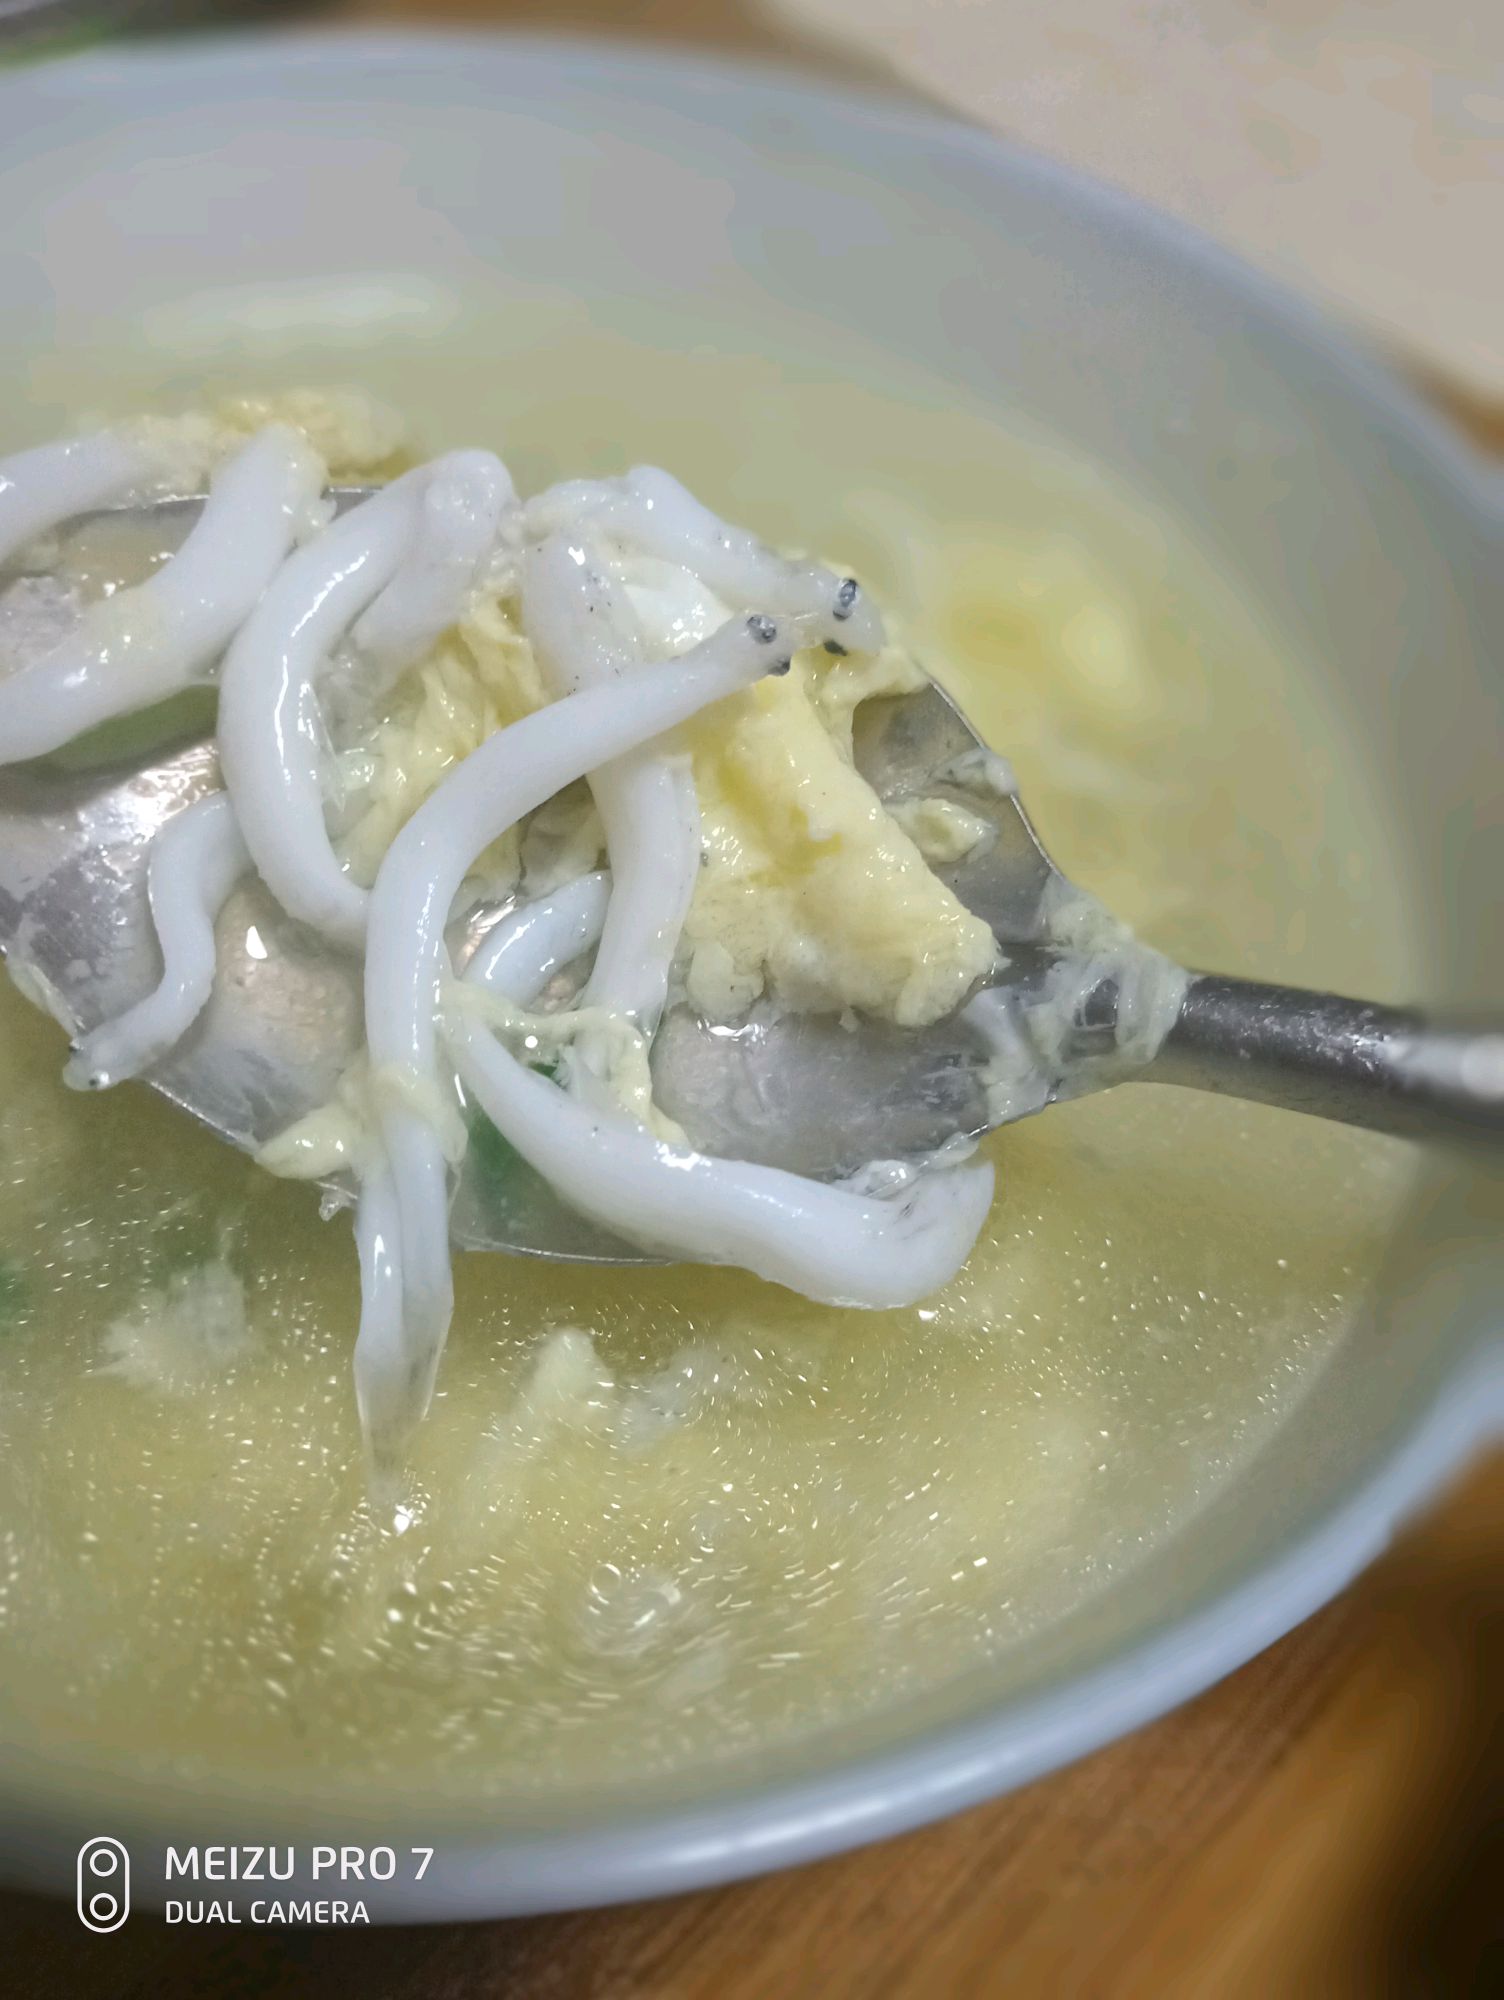 再次开锅后加盐和黑胡椒调味,一碗简单快手清淡的银鱼汤就好了